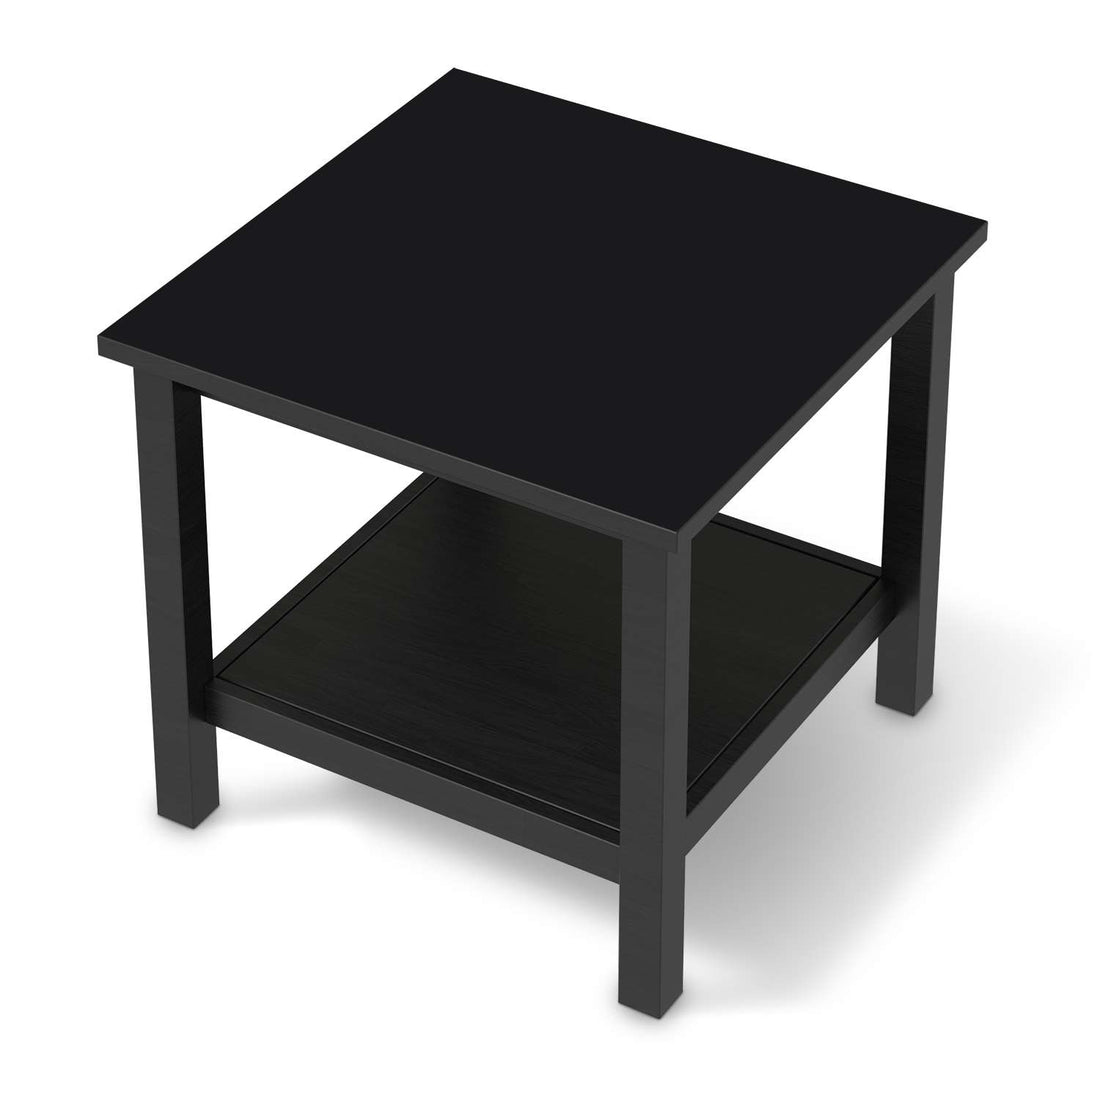 Möbel Klebefolie Schwarz  - IKEA Hemnes Beistelltisch 55x55 cm - schwarz